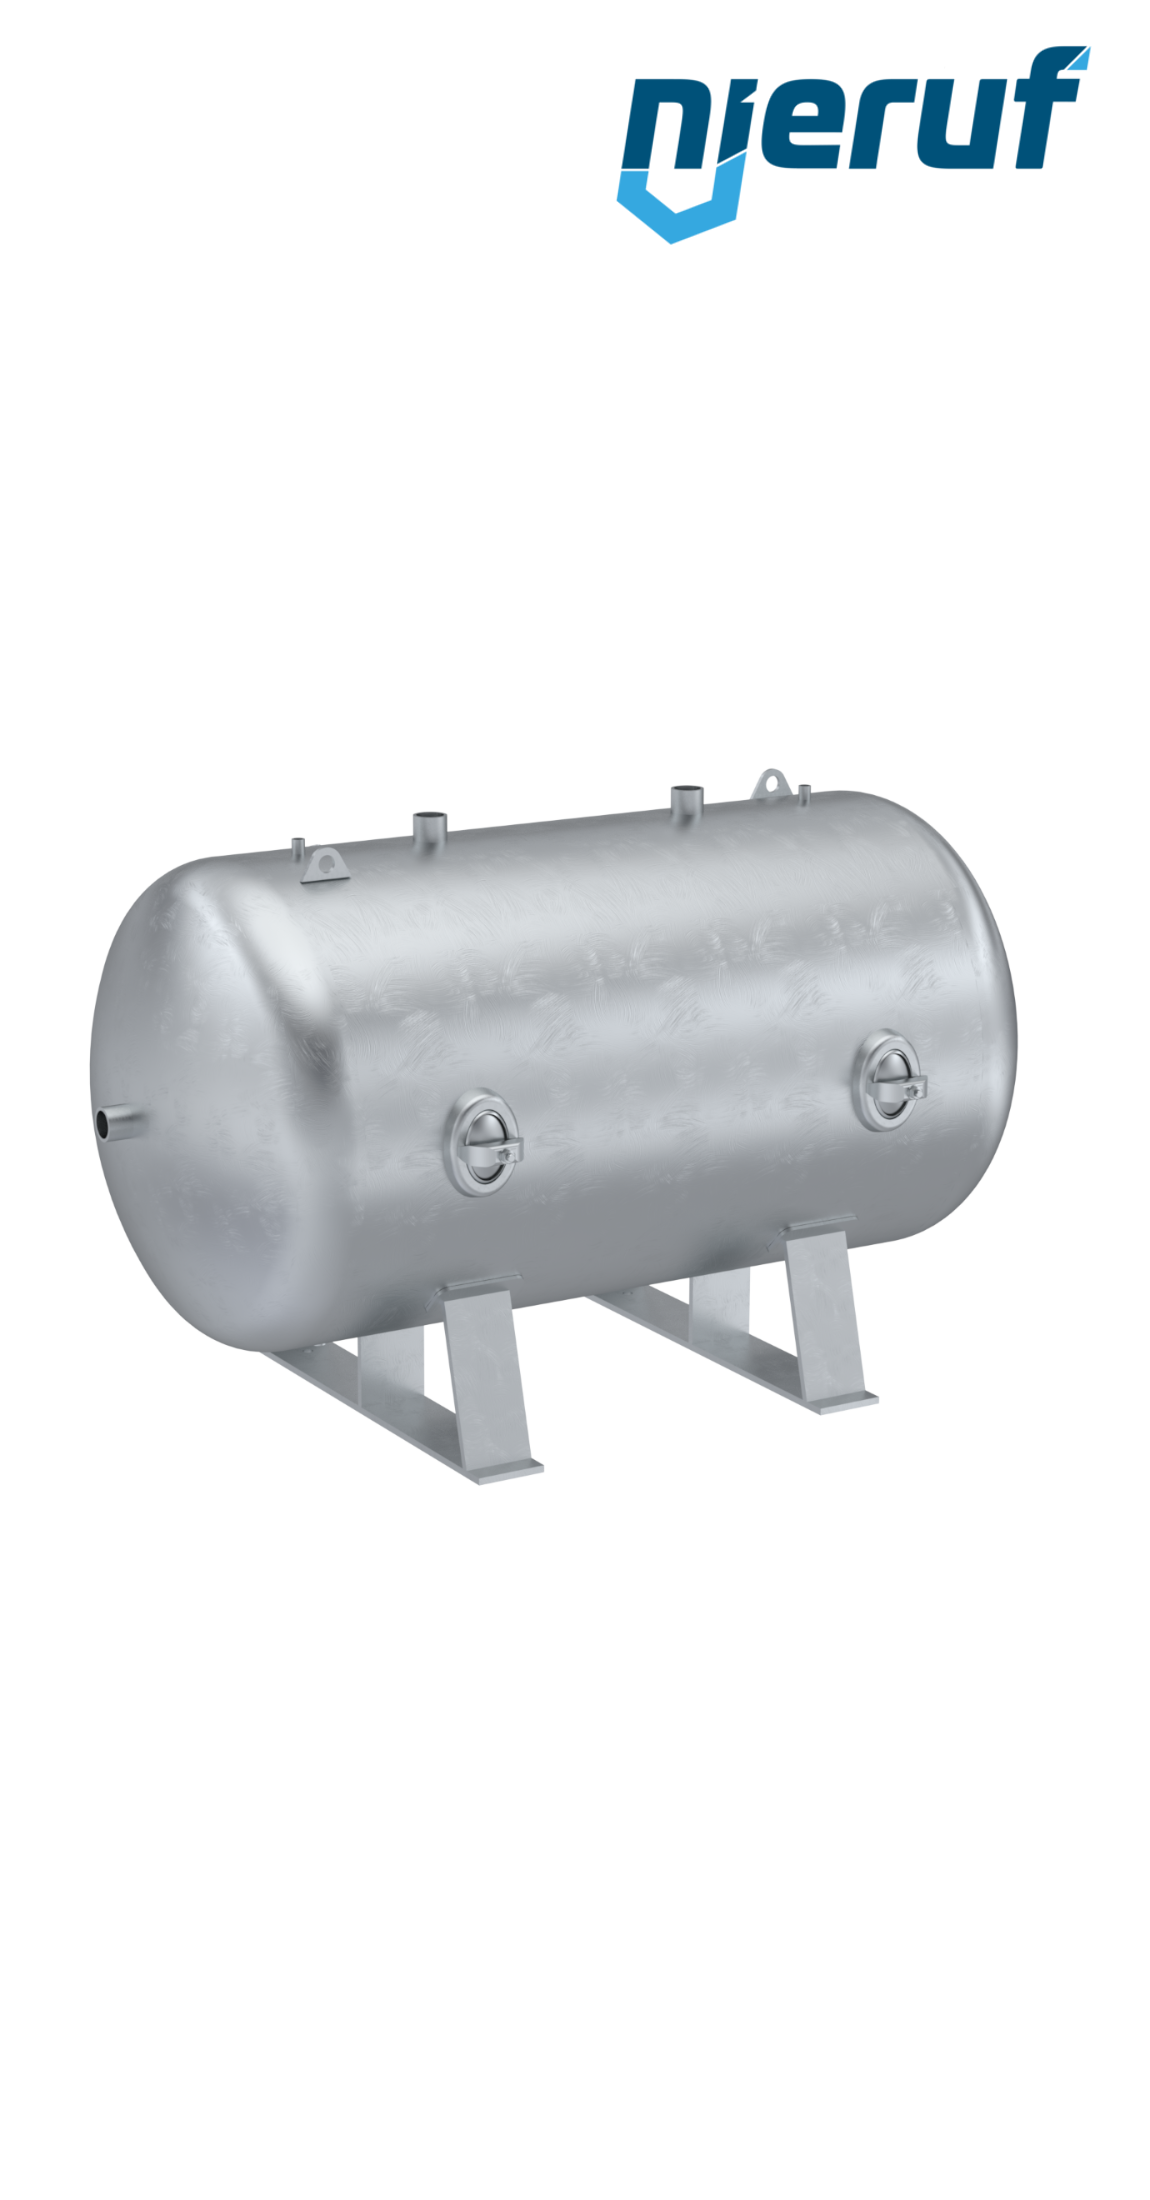 Serbatoi per alta pressione orizzontale BE02 3000 litri, 0-31 bar, acciaio zincato